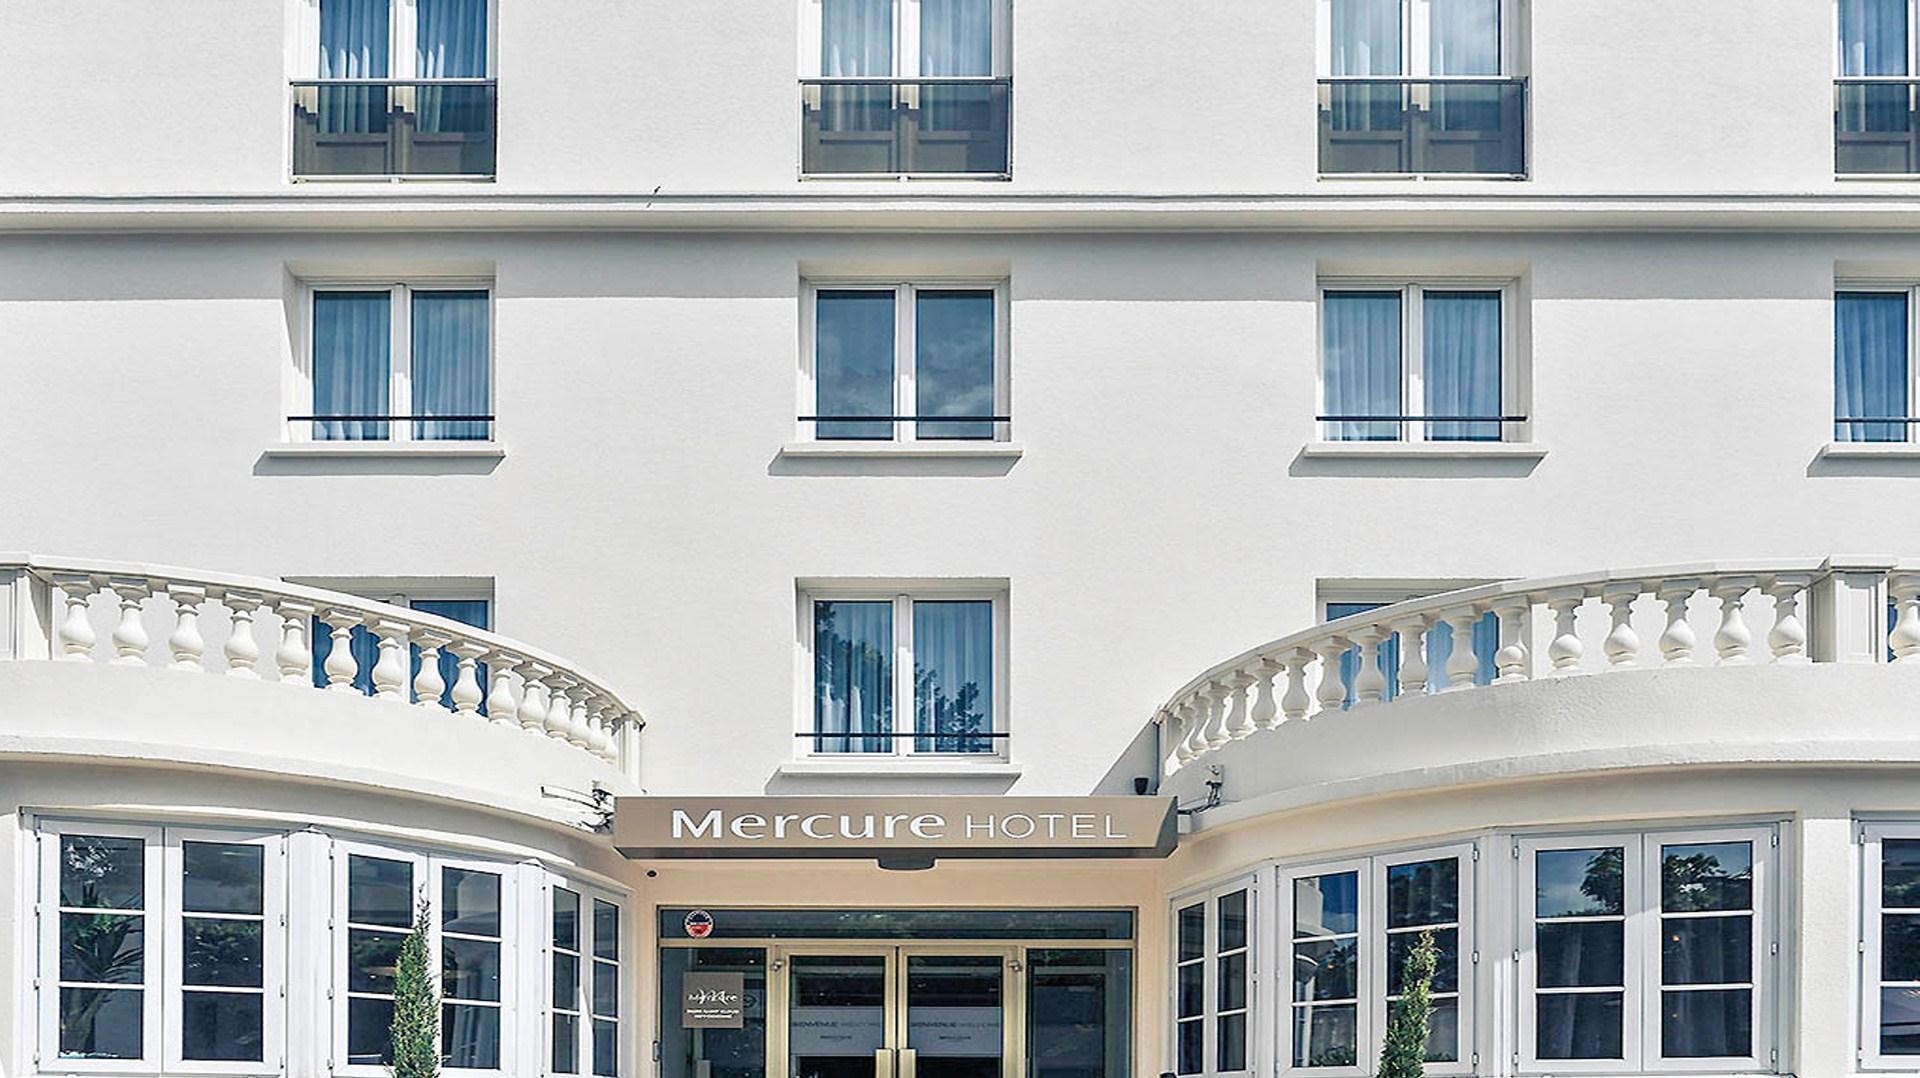 Hotel Mercure Paris Saint Cloud Hippodrome in Paris, FR